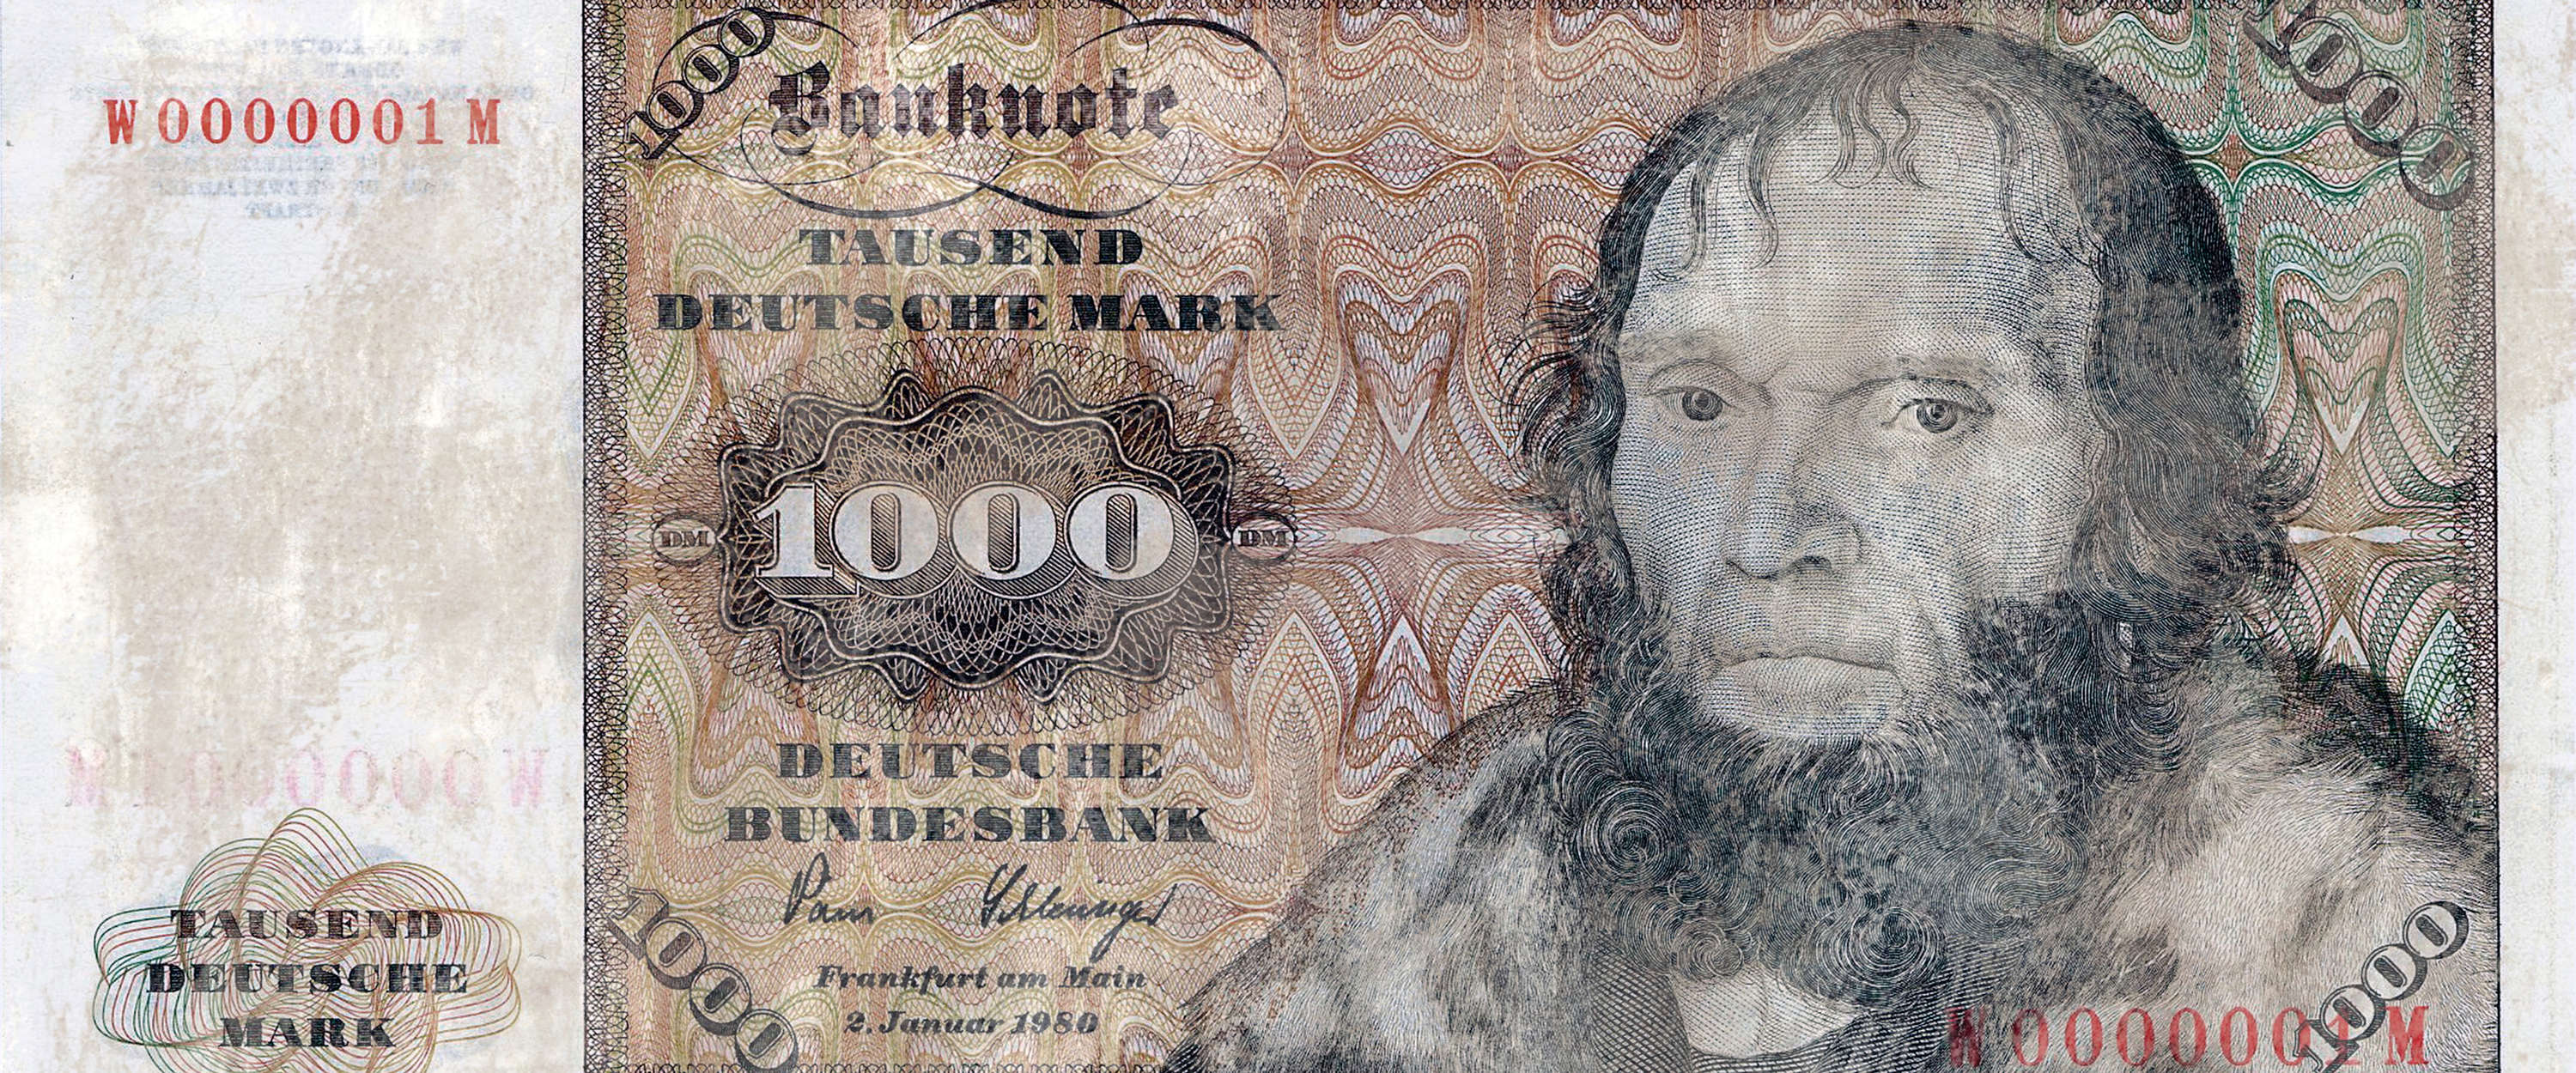             Fototapete historischer Geldschein – Tausend Mark
        